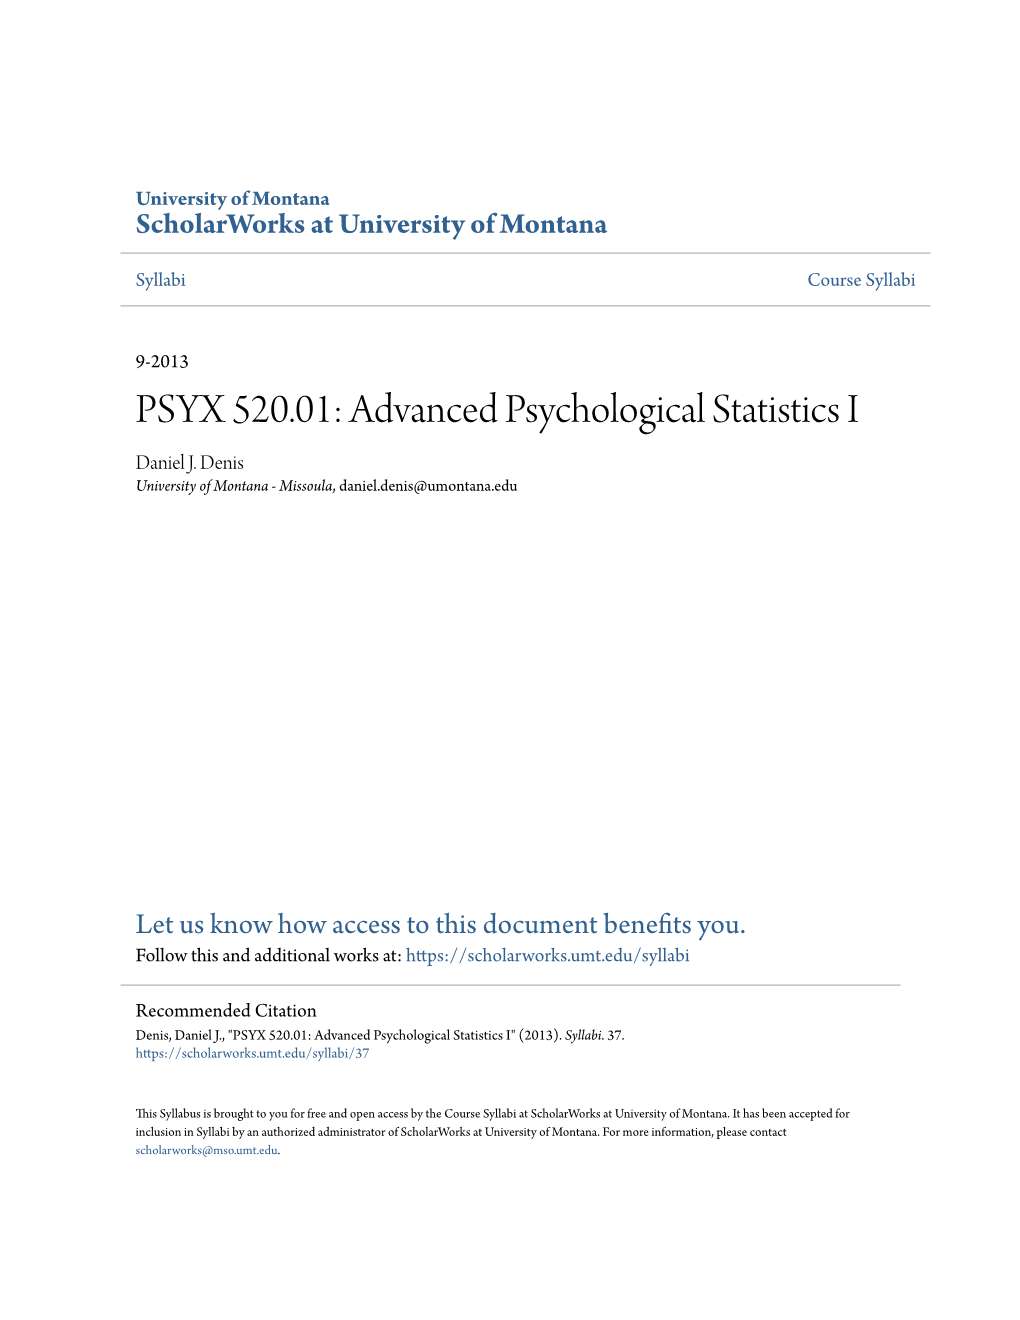 PSYX 520.01: Advanced Psychological Statistics I Daniel J